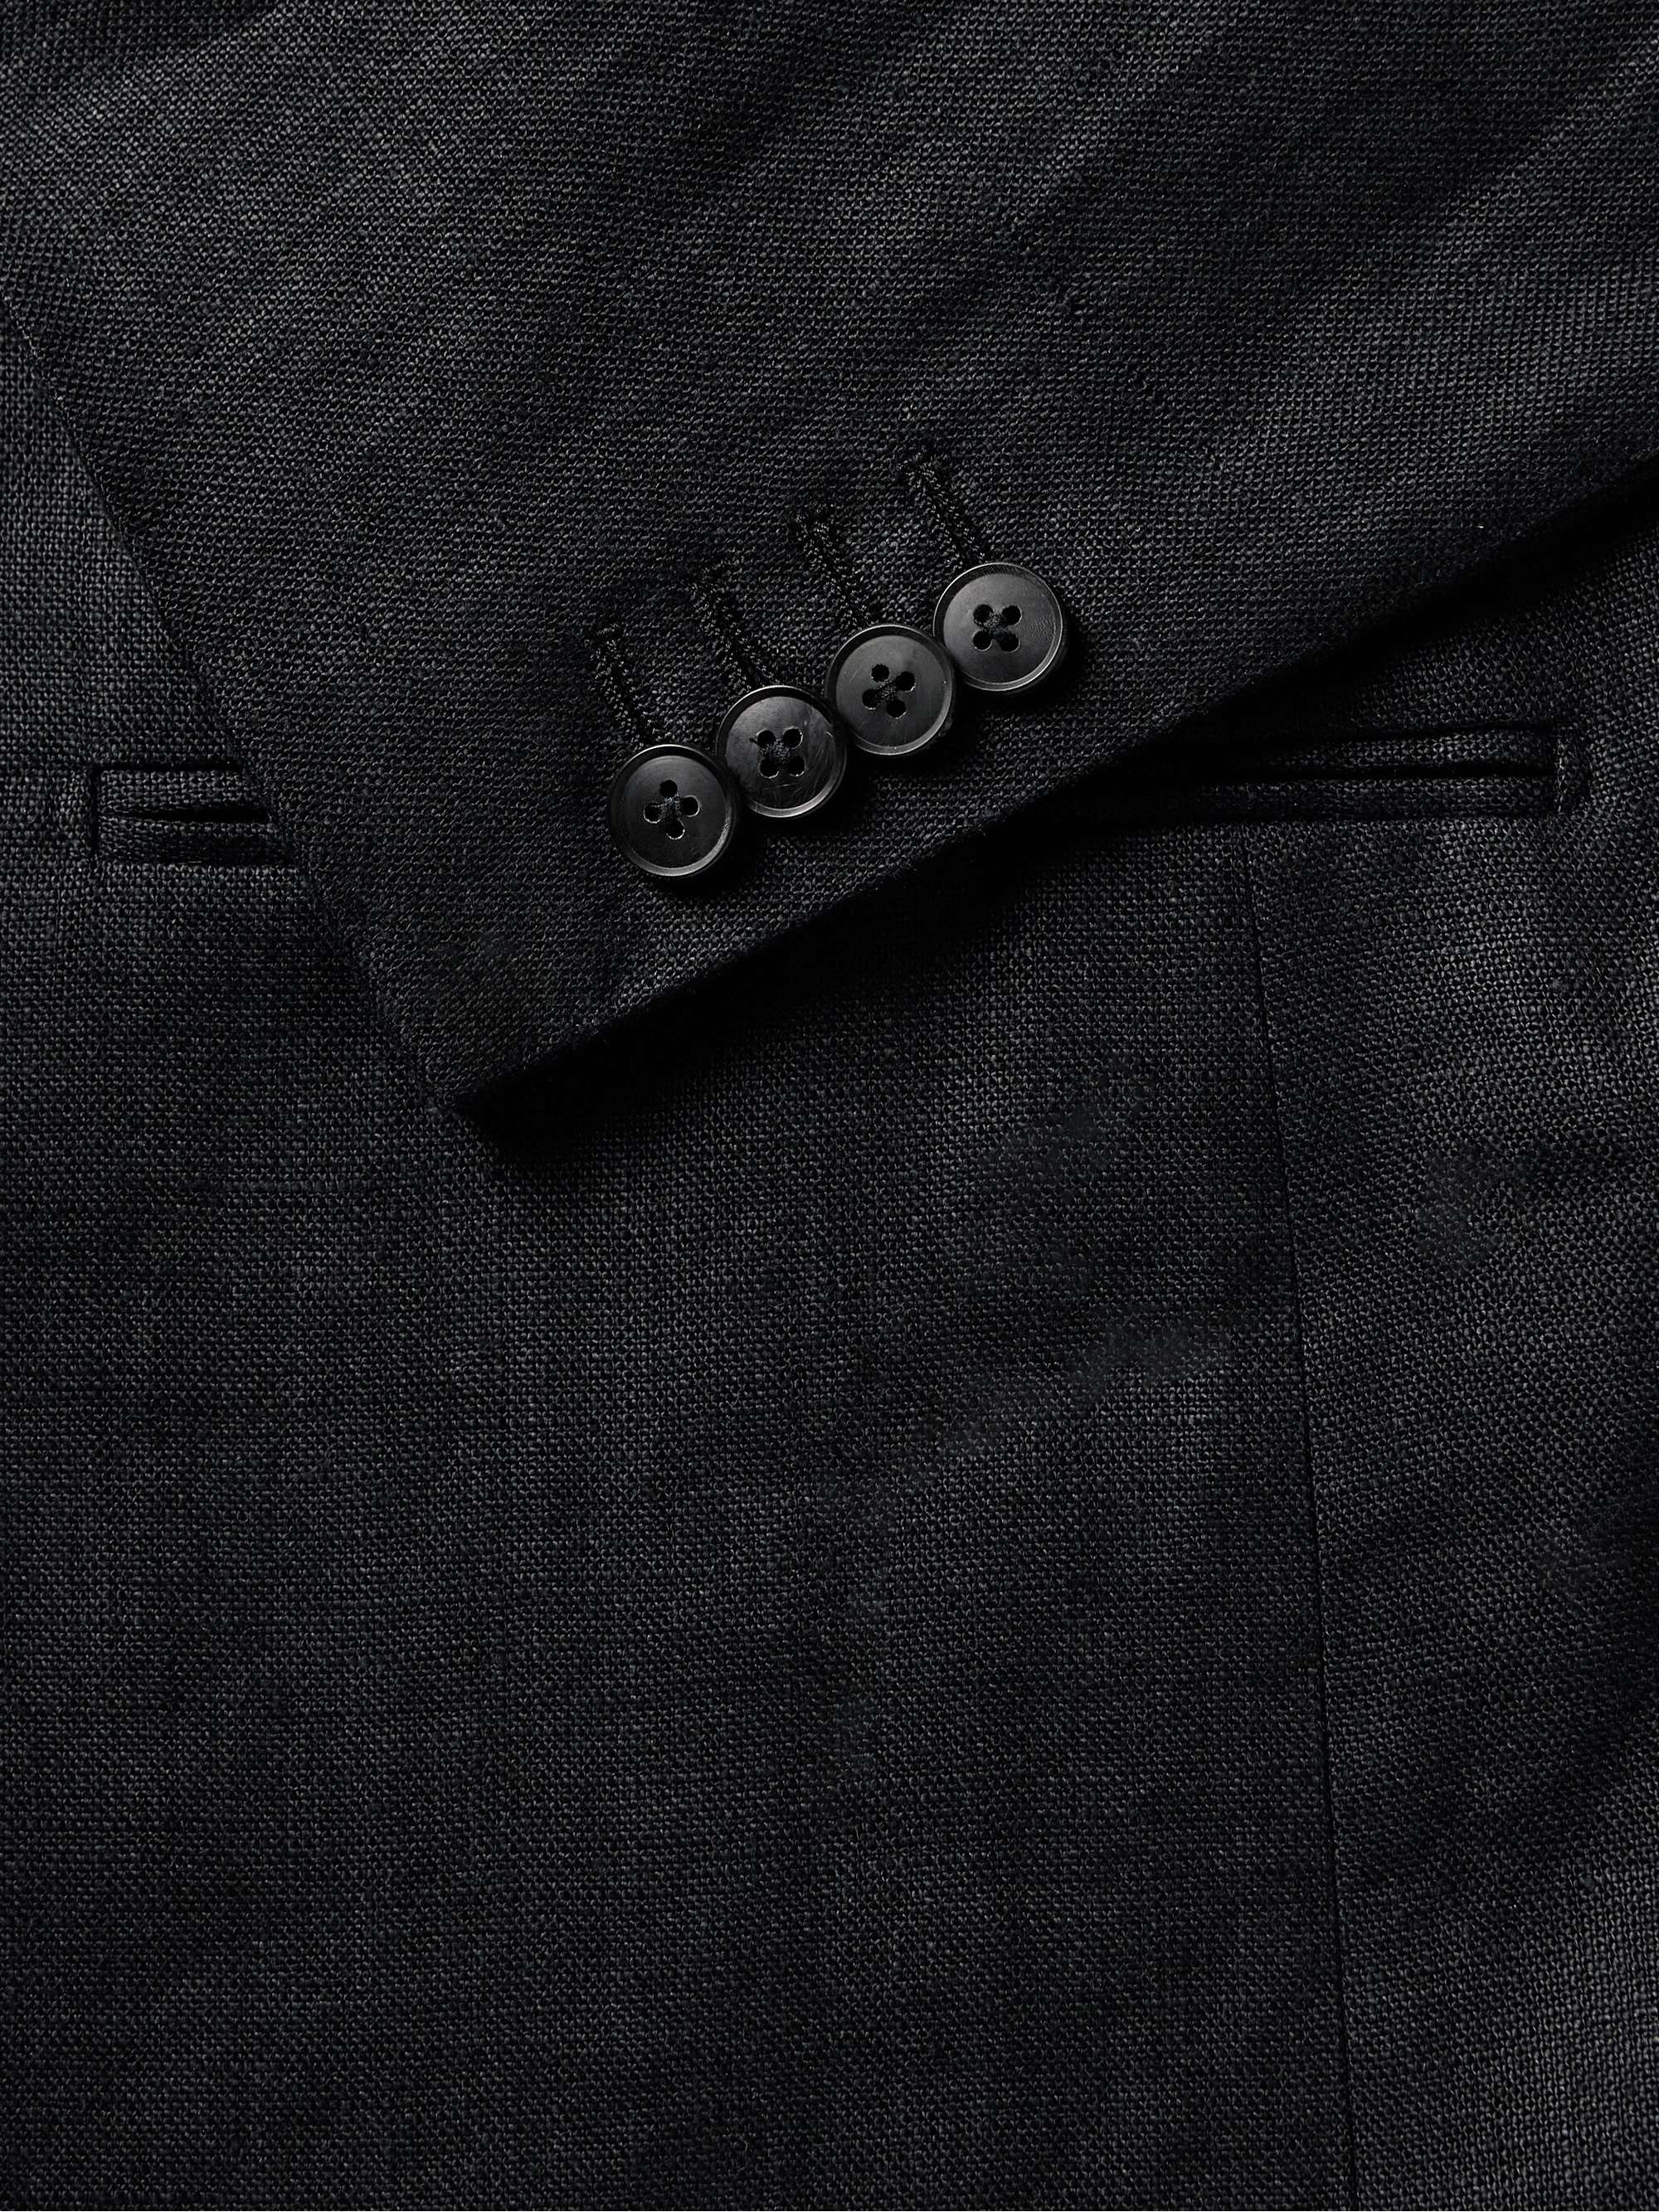 SAMAN AMEL Slim-FIt Linen Suit Jacket for Men | MR PORTER